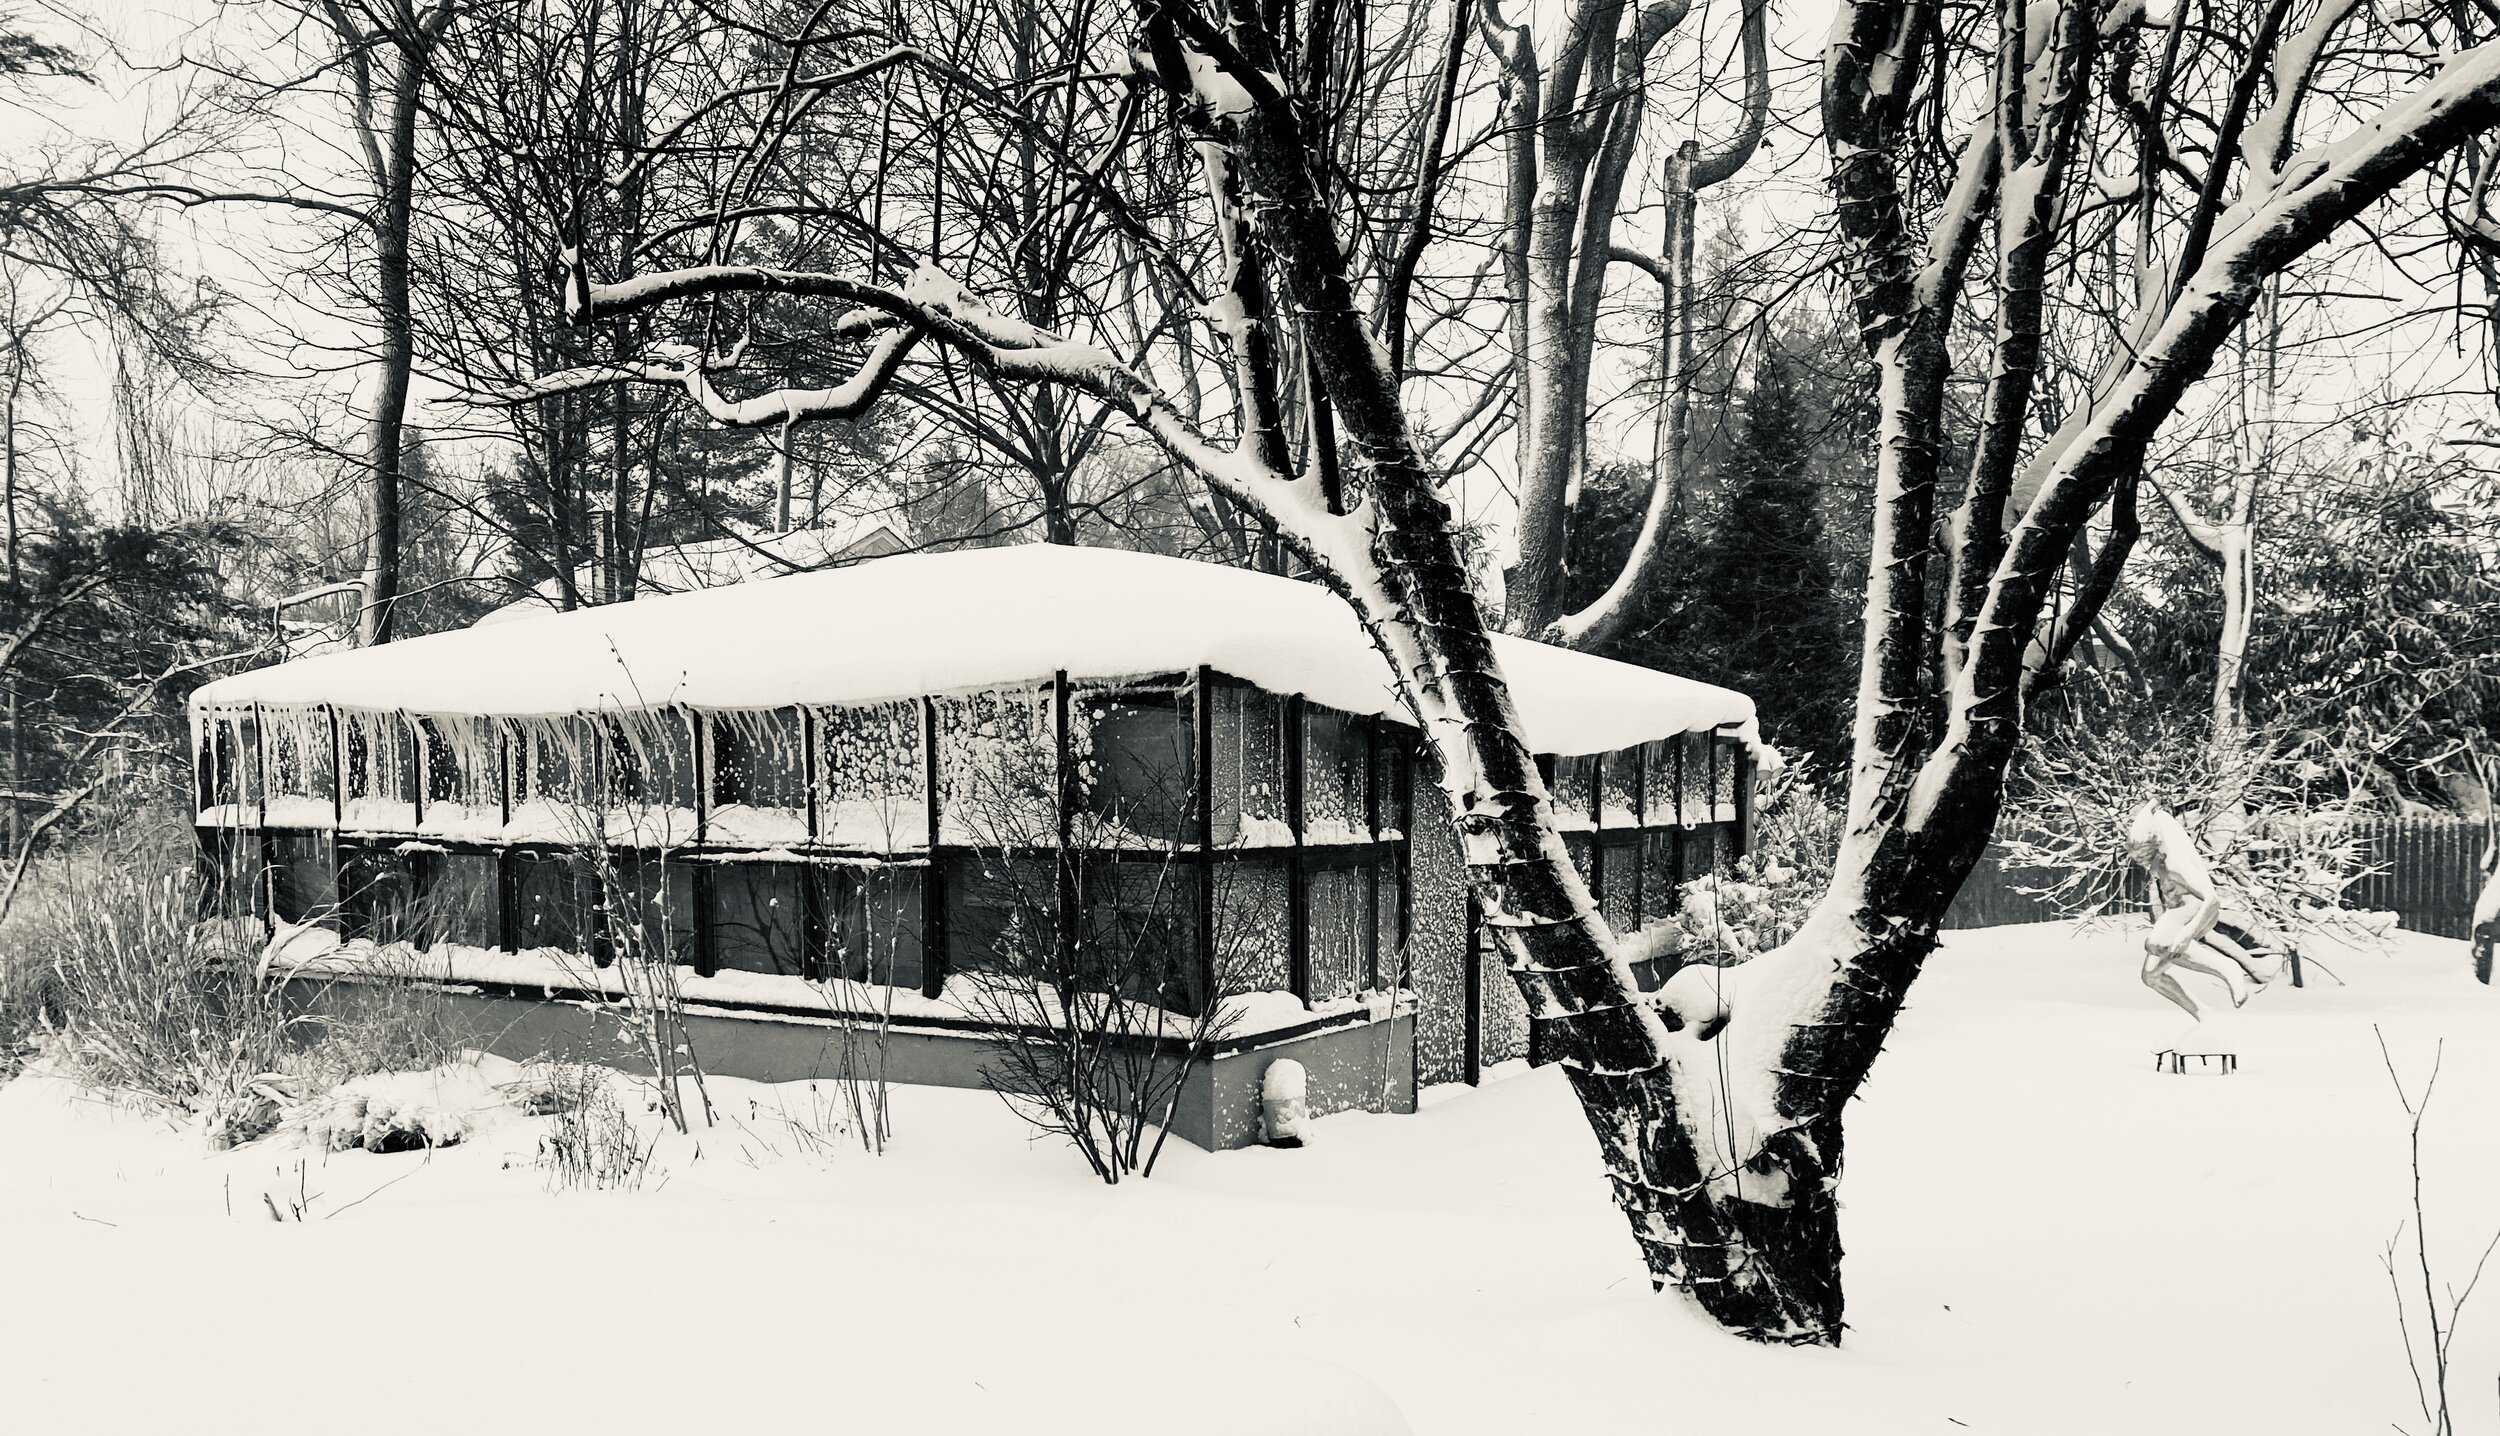  Bob’s studio in snowstorm-Rye,NY. Jan 2021 